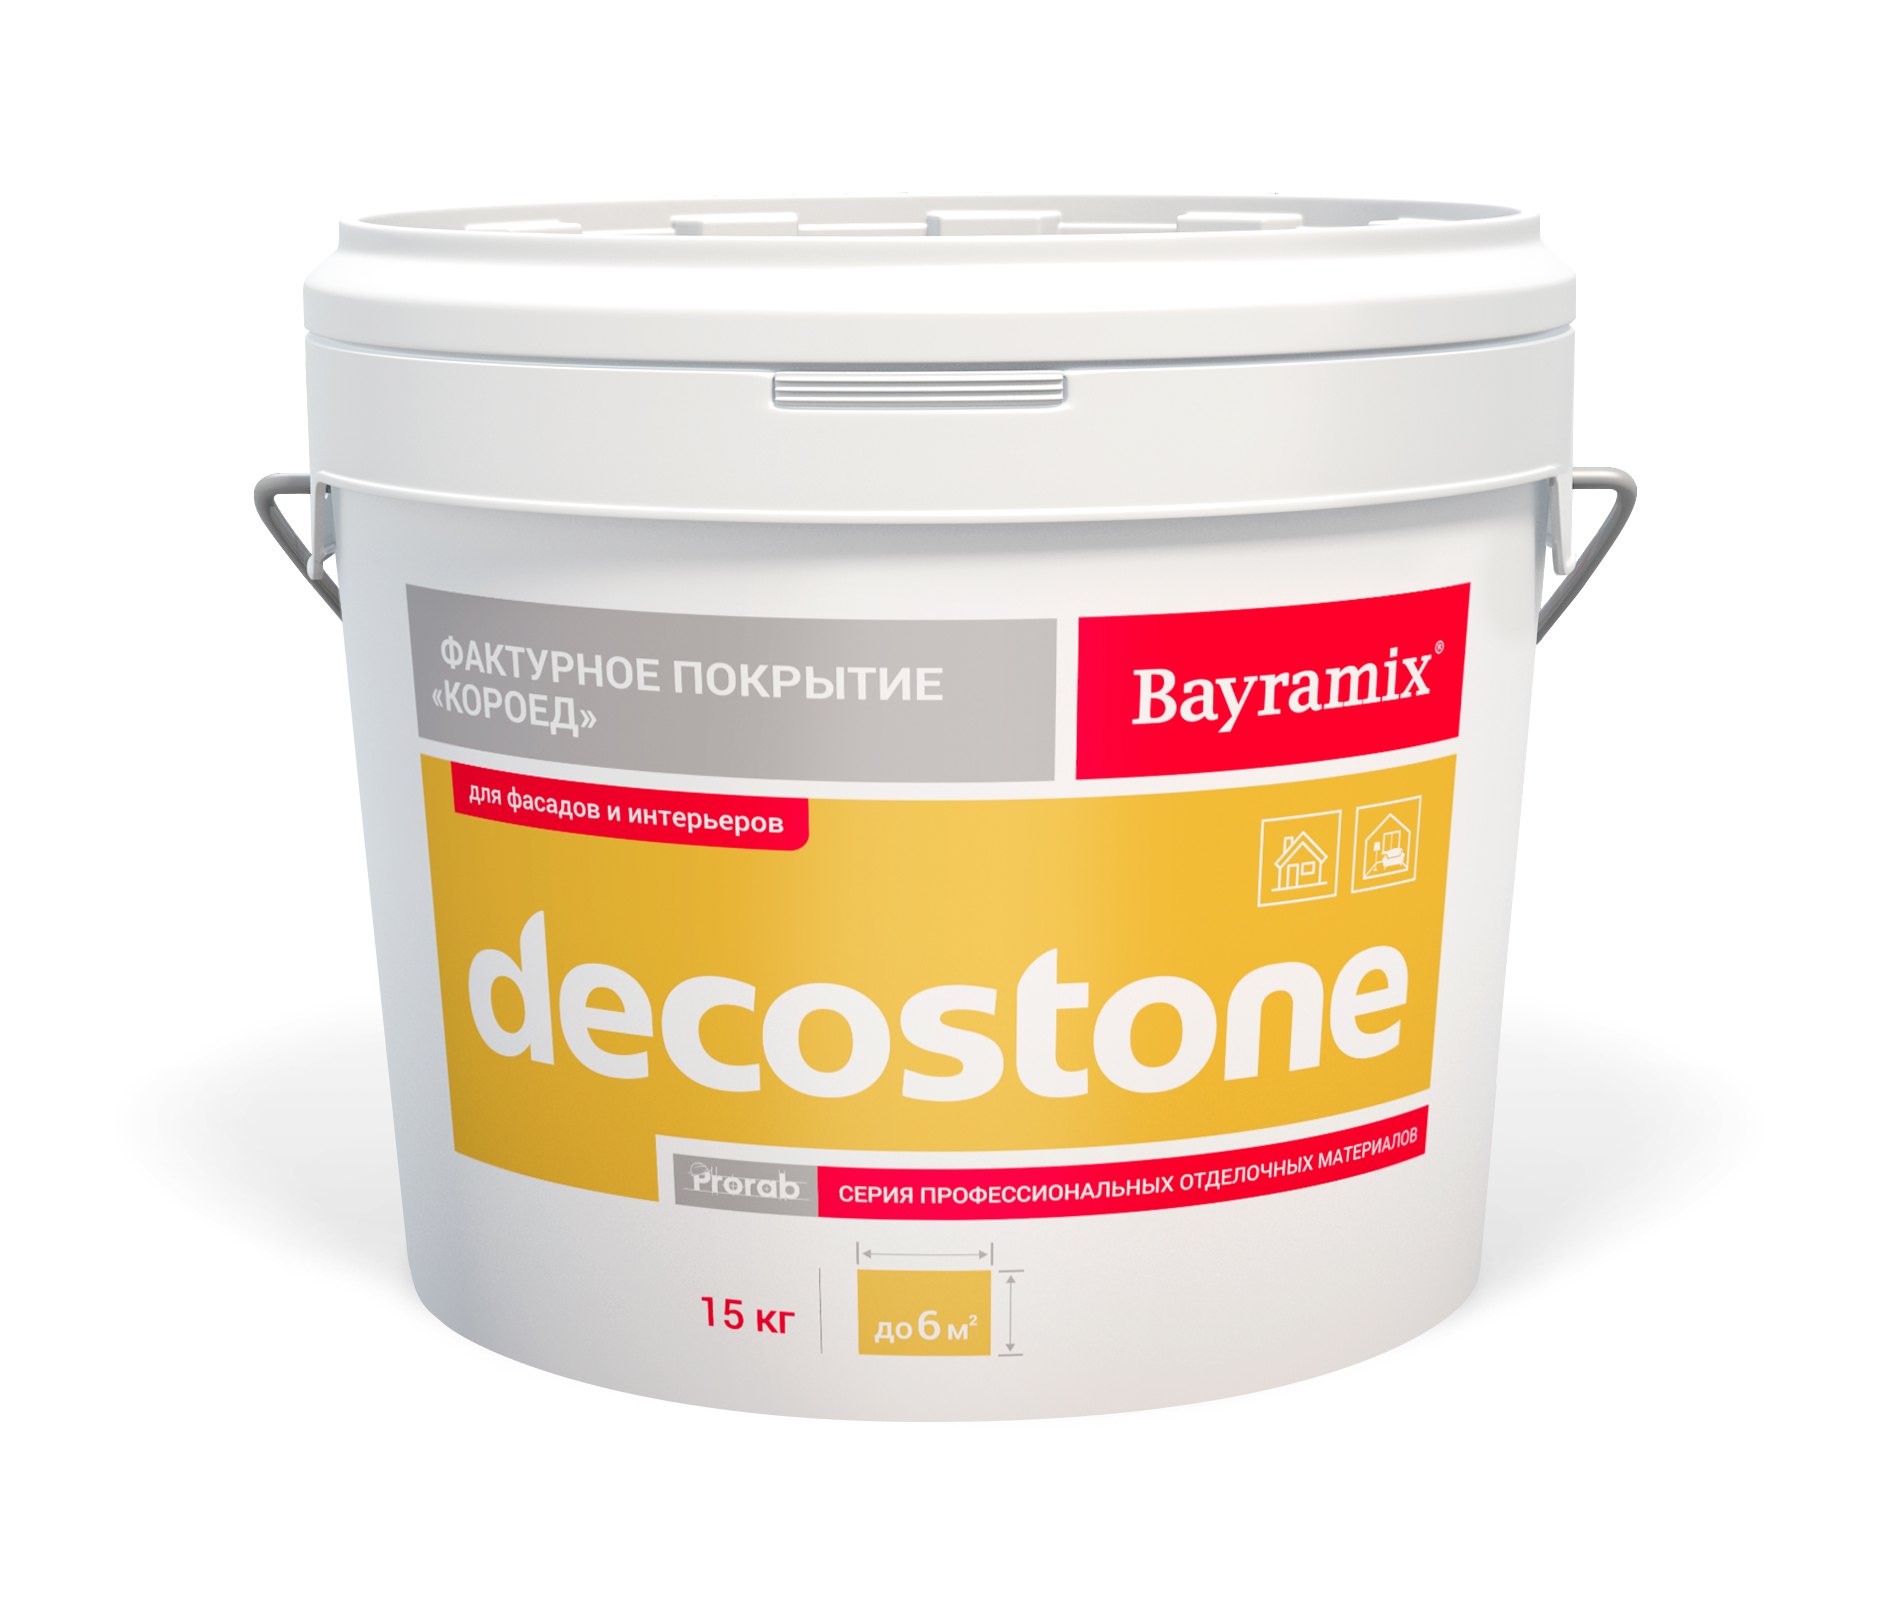 фото Покрытие bayramix decostone 001 m, фактурное, 15 кг